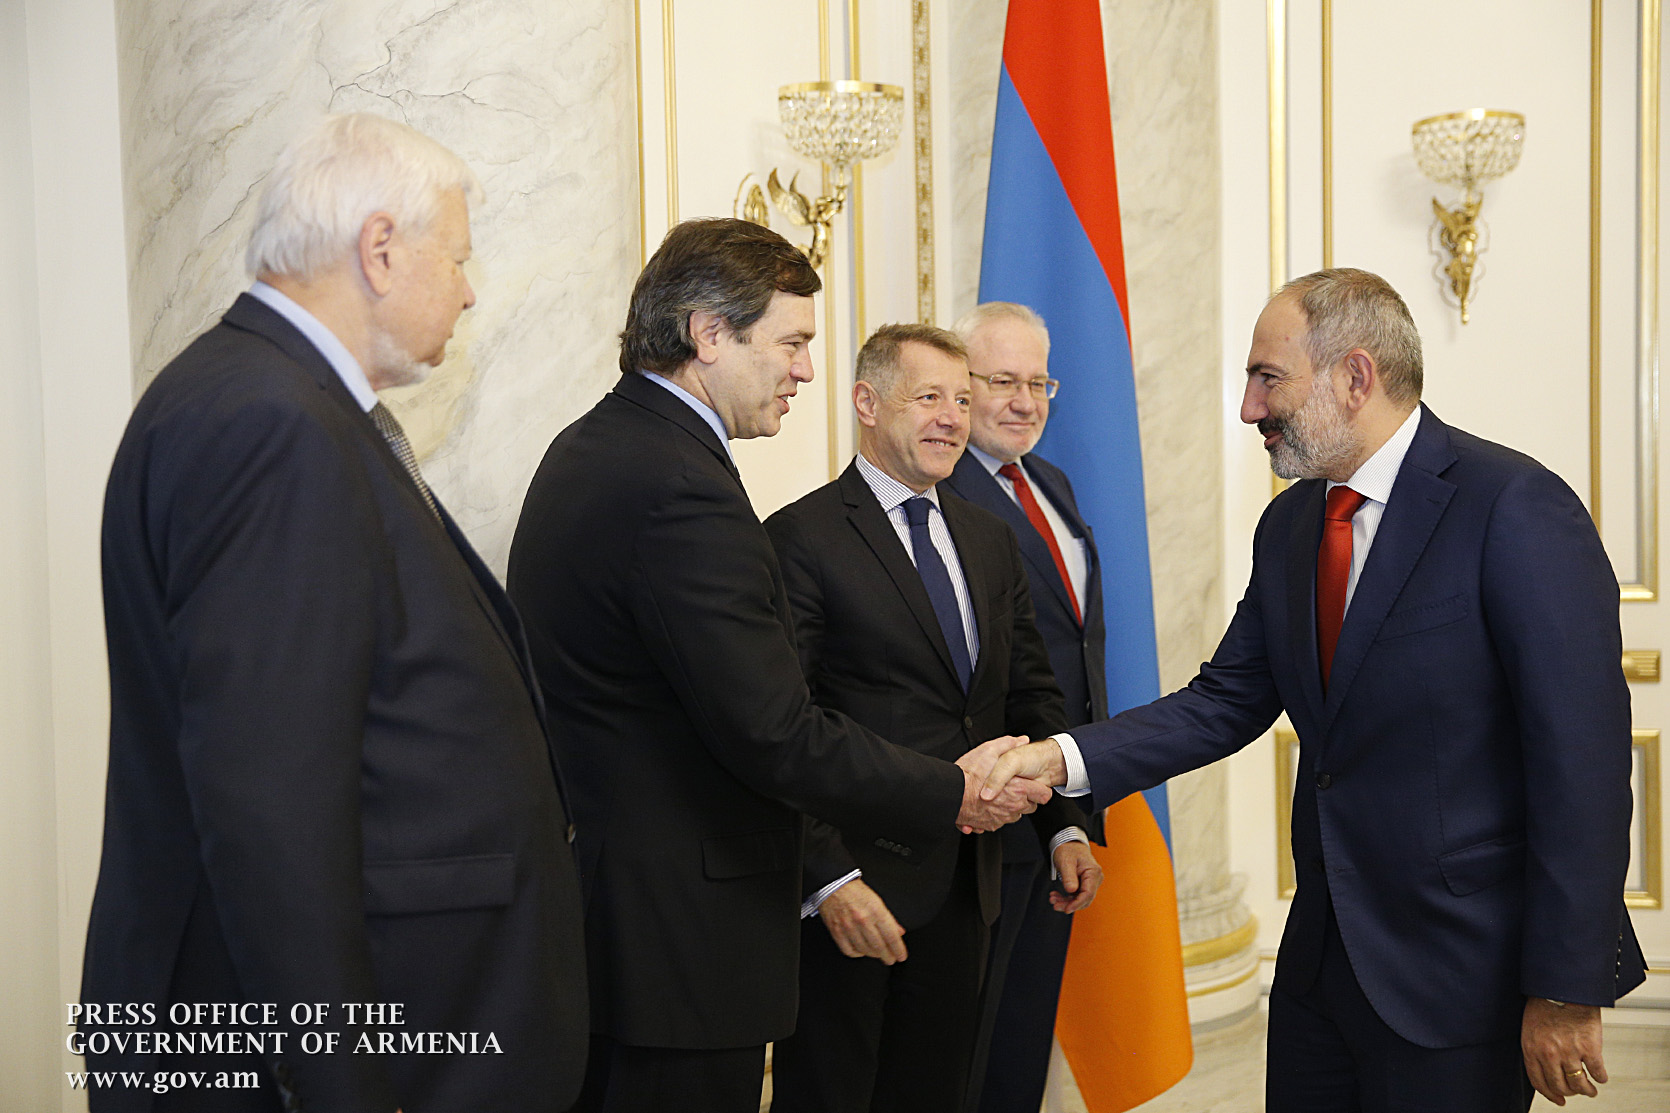 Пашинян и сопредседатели МГ ОБСЕ обсудили укрепление режима прекращения огня в Карабахе